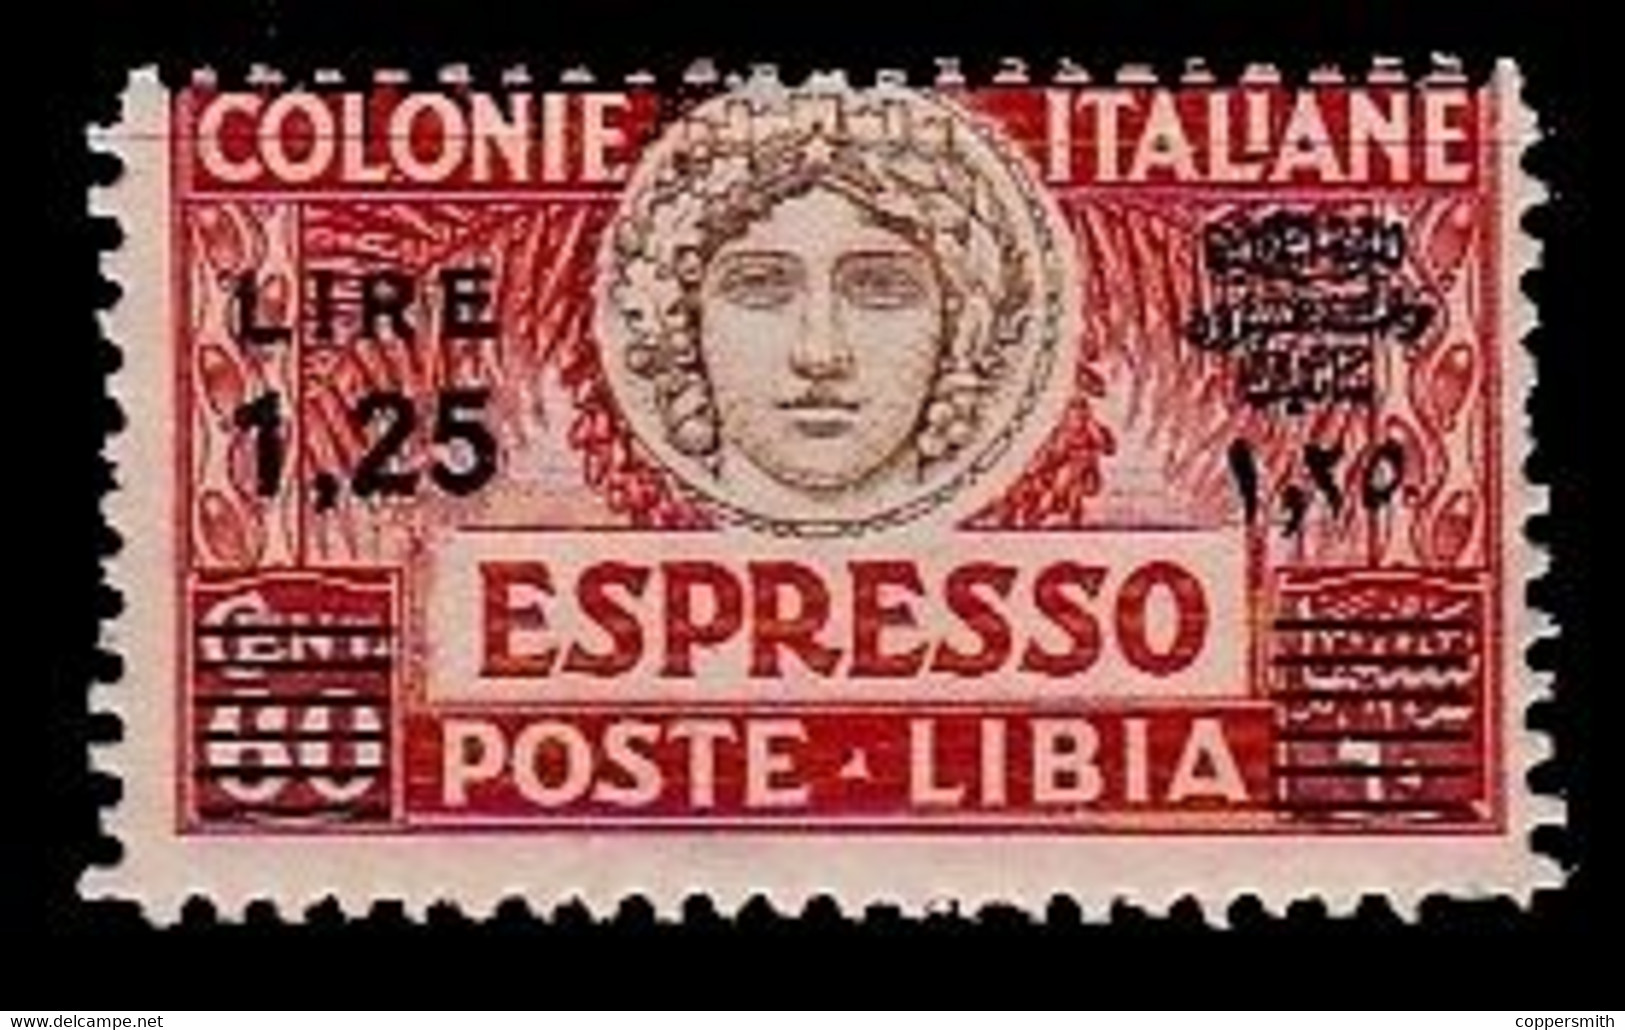 (003) Italie / Italy / Libya  Express Overprint / Surcharge / Eilmarke Aufdruck ** / Mnh  Michel 65 AC - Libya